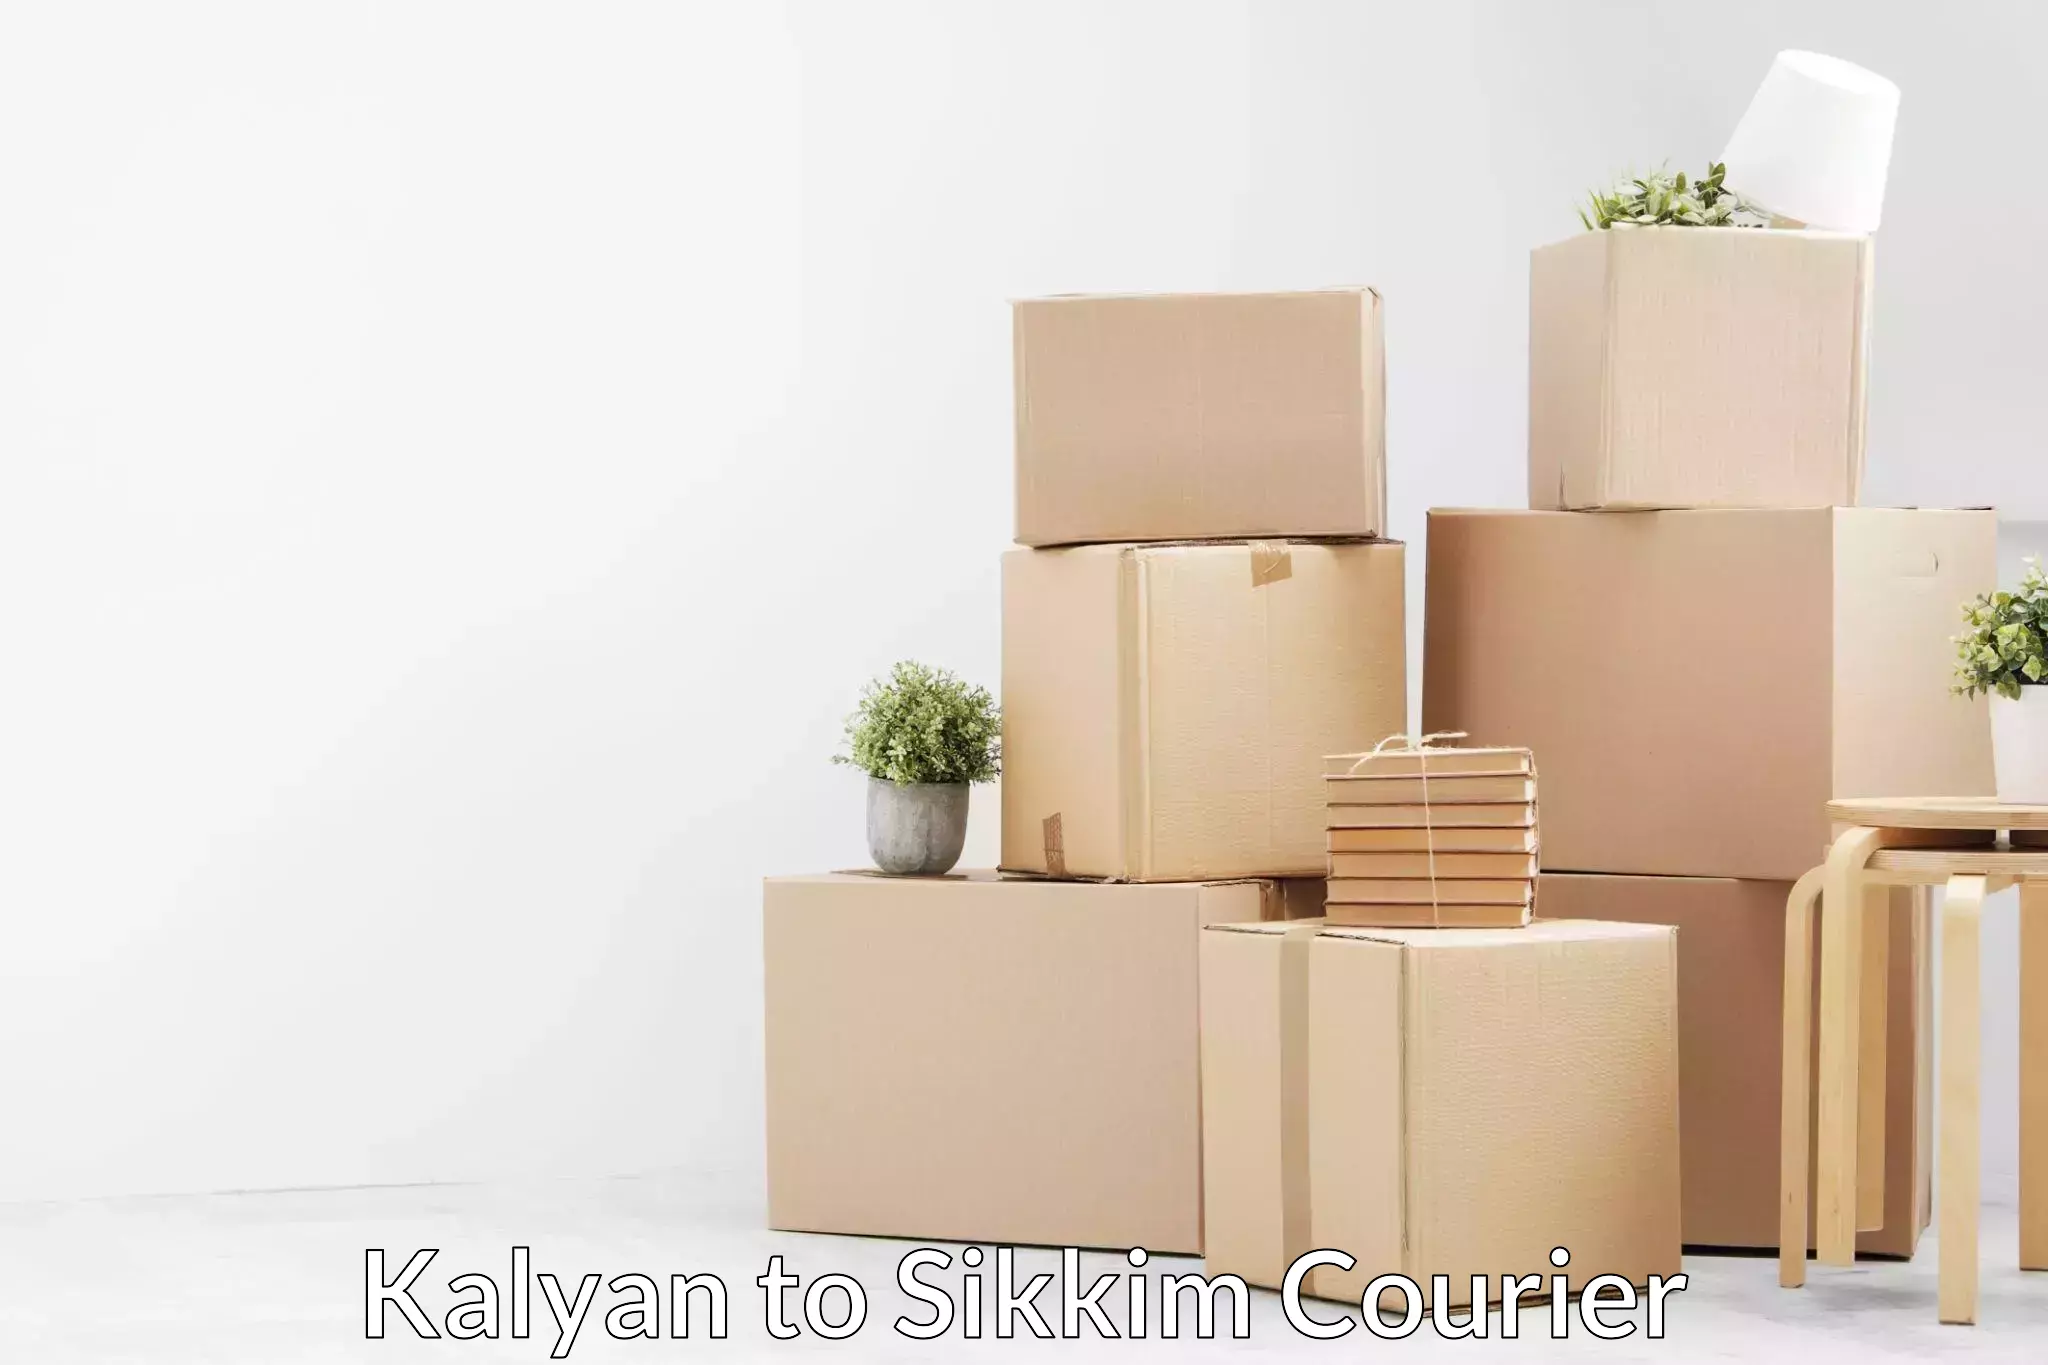 Skilled furniture transporters Kalyan to Pelling